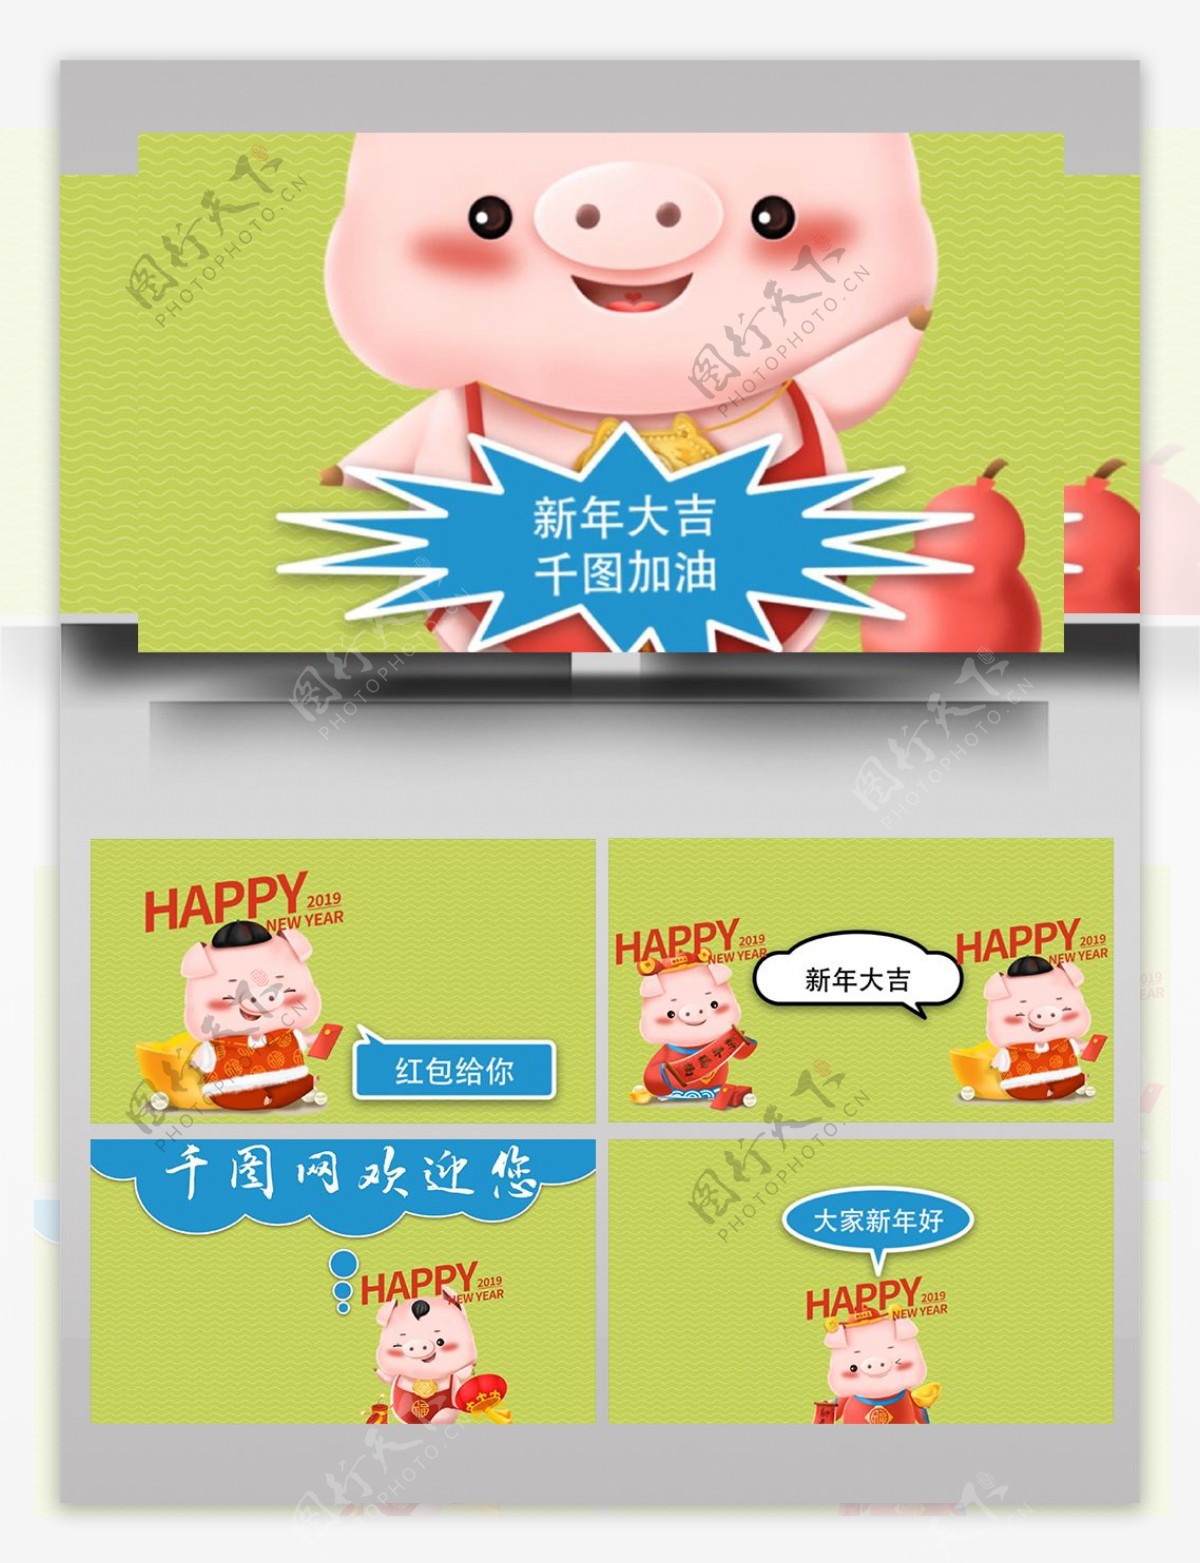 新春猪年卡通对话气泡展示AE模板